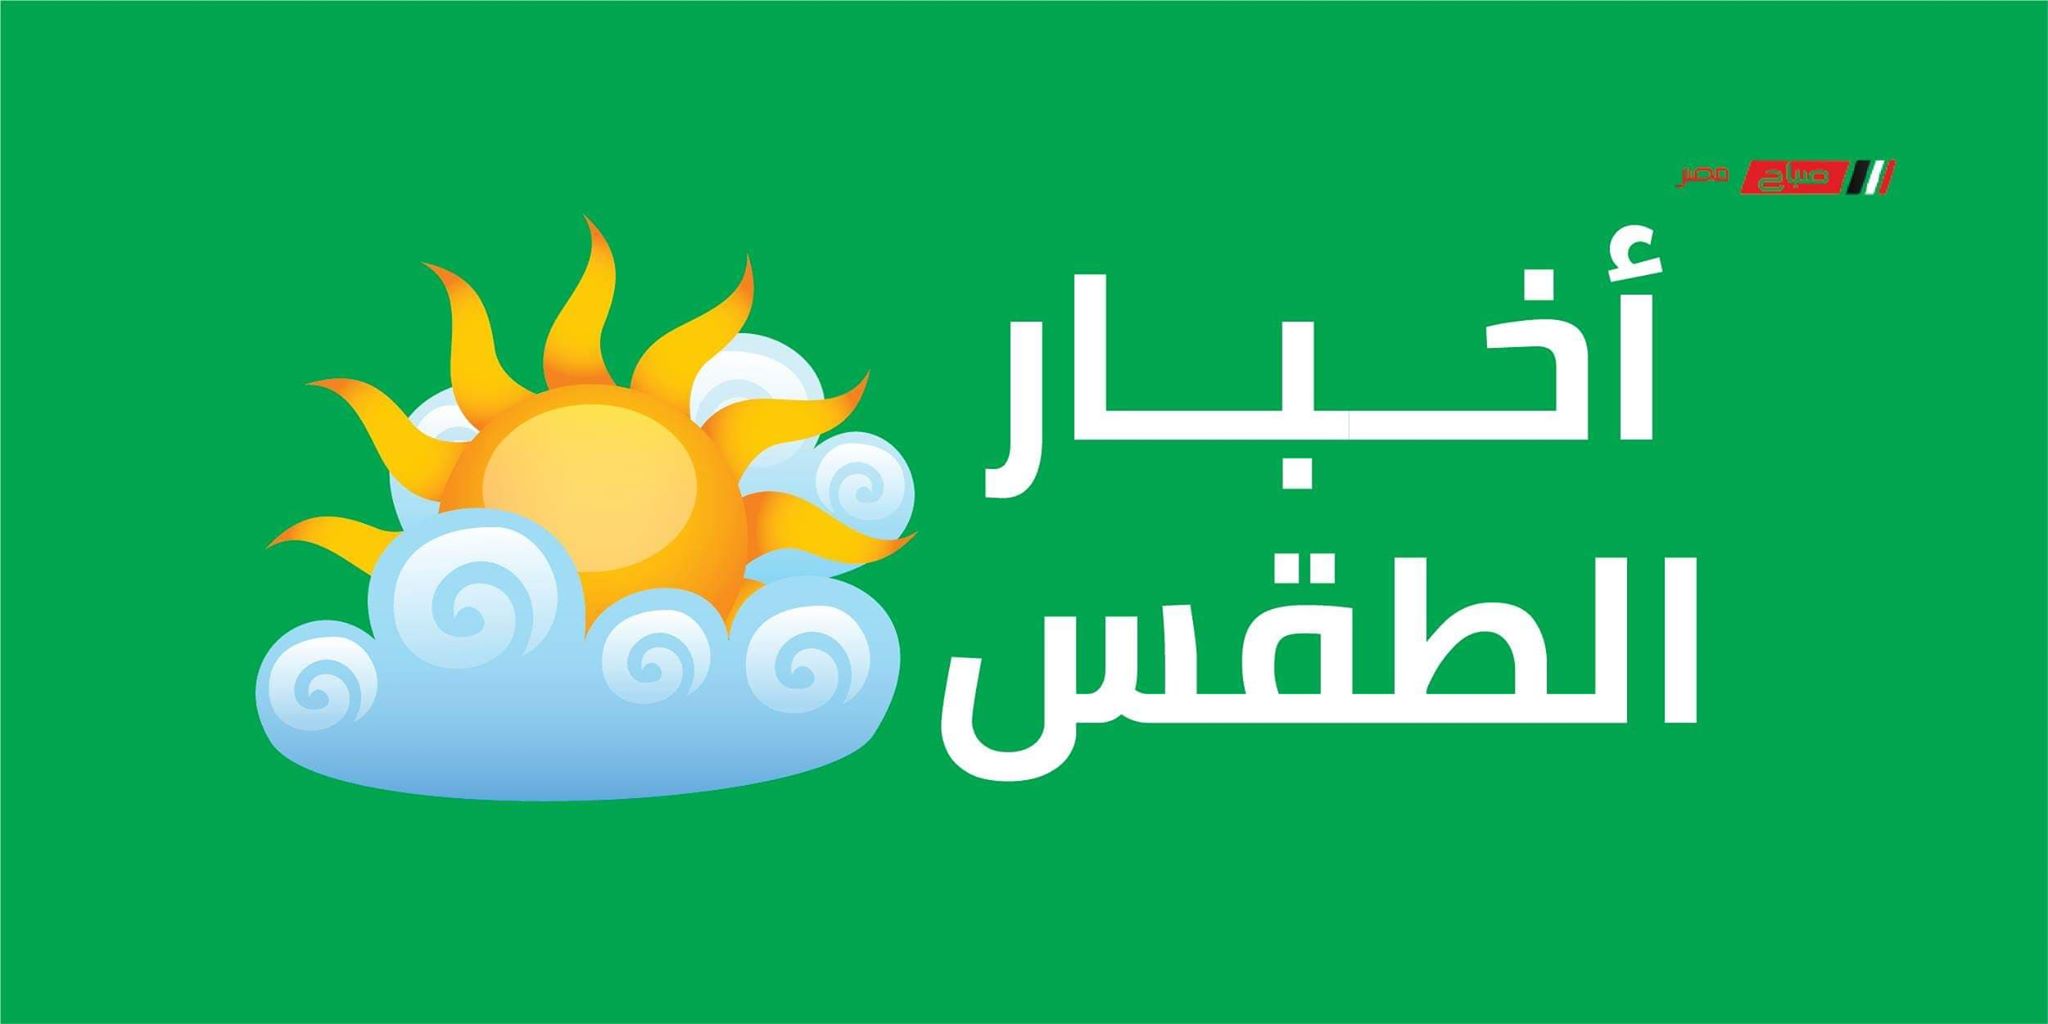 طقس حار وصافي على القاهرة اليوم الأربعاء 20_5_2020 والعظمى 43